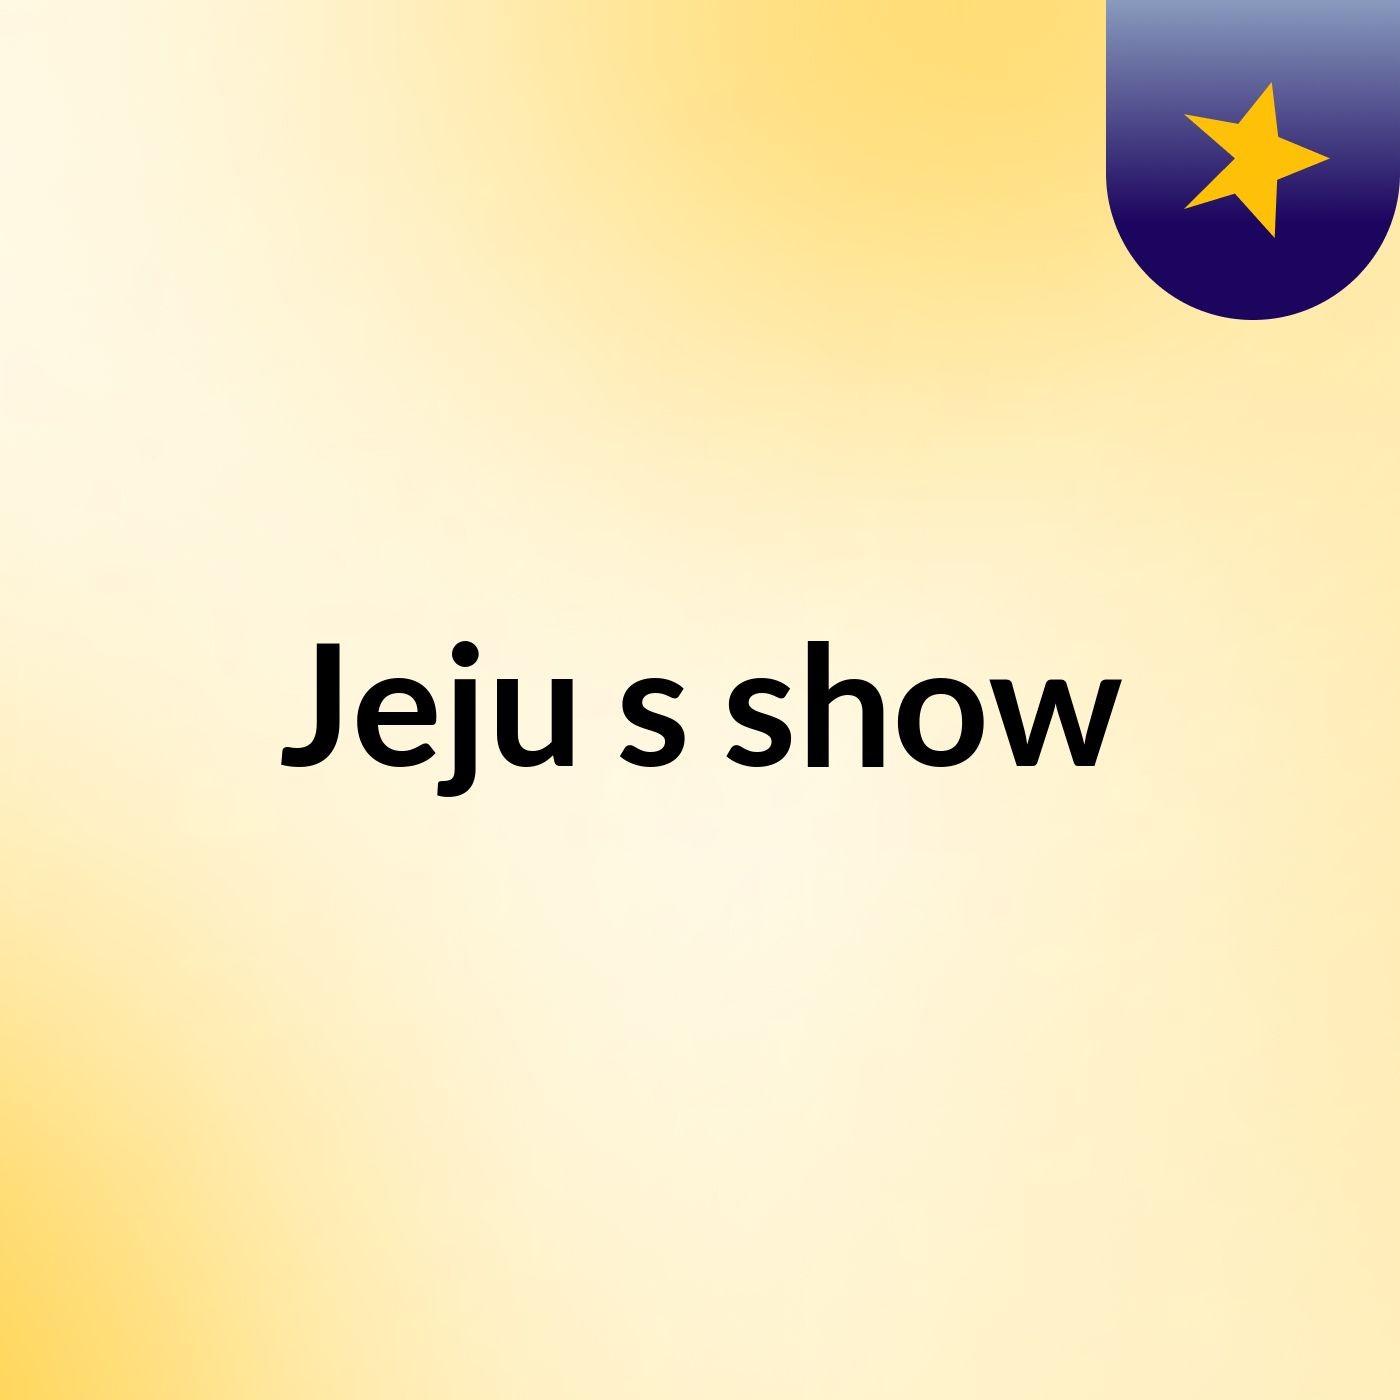 Jeju's show